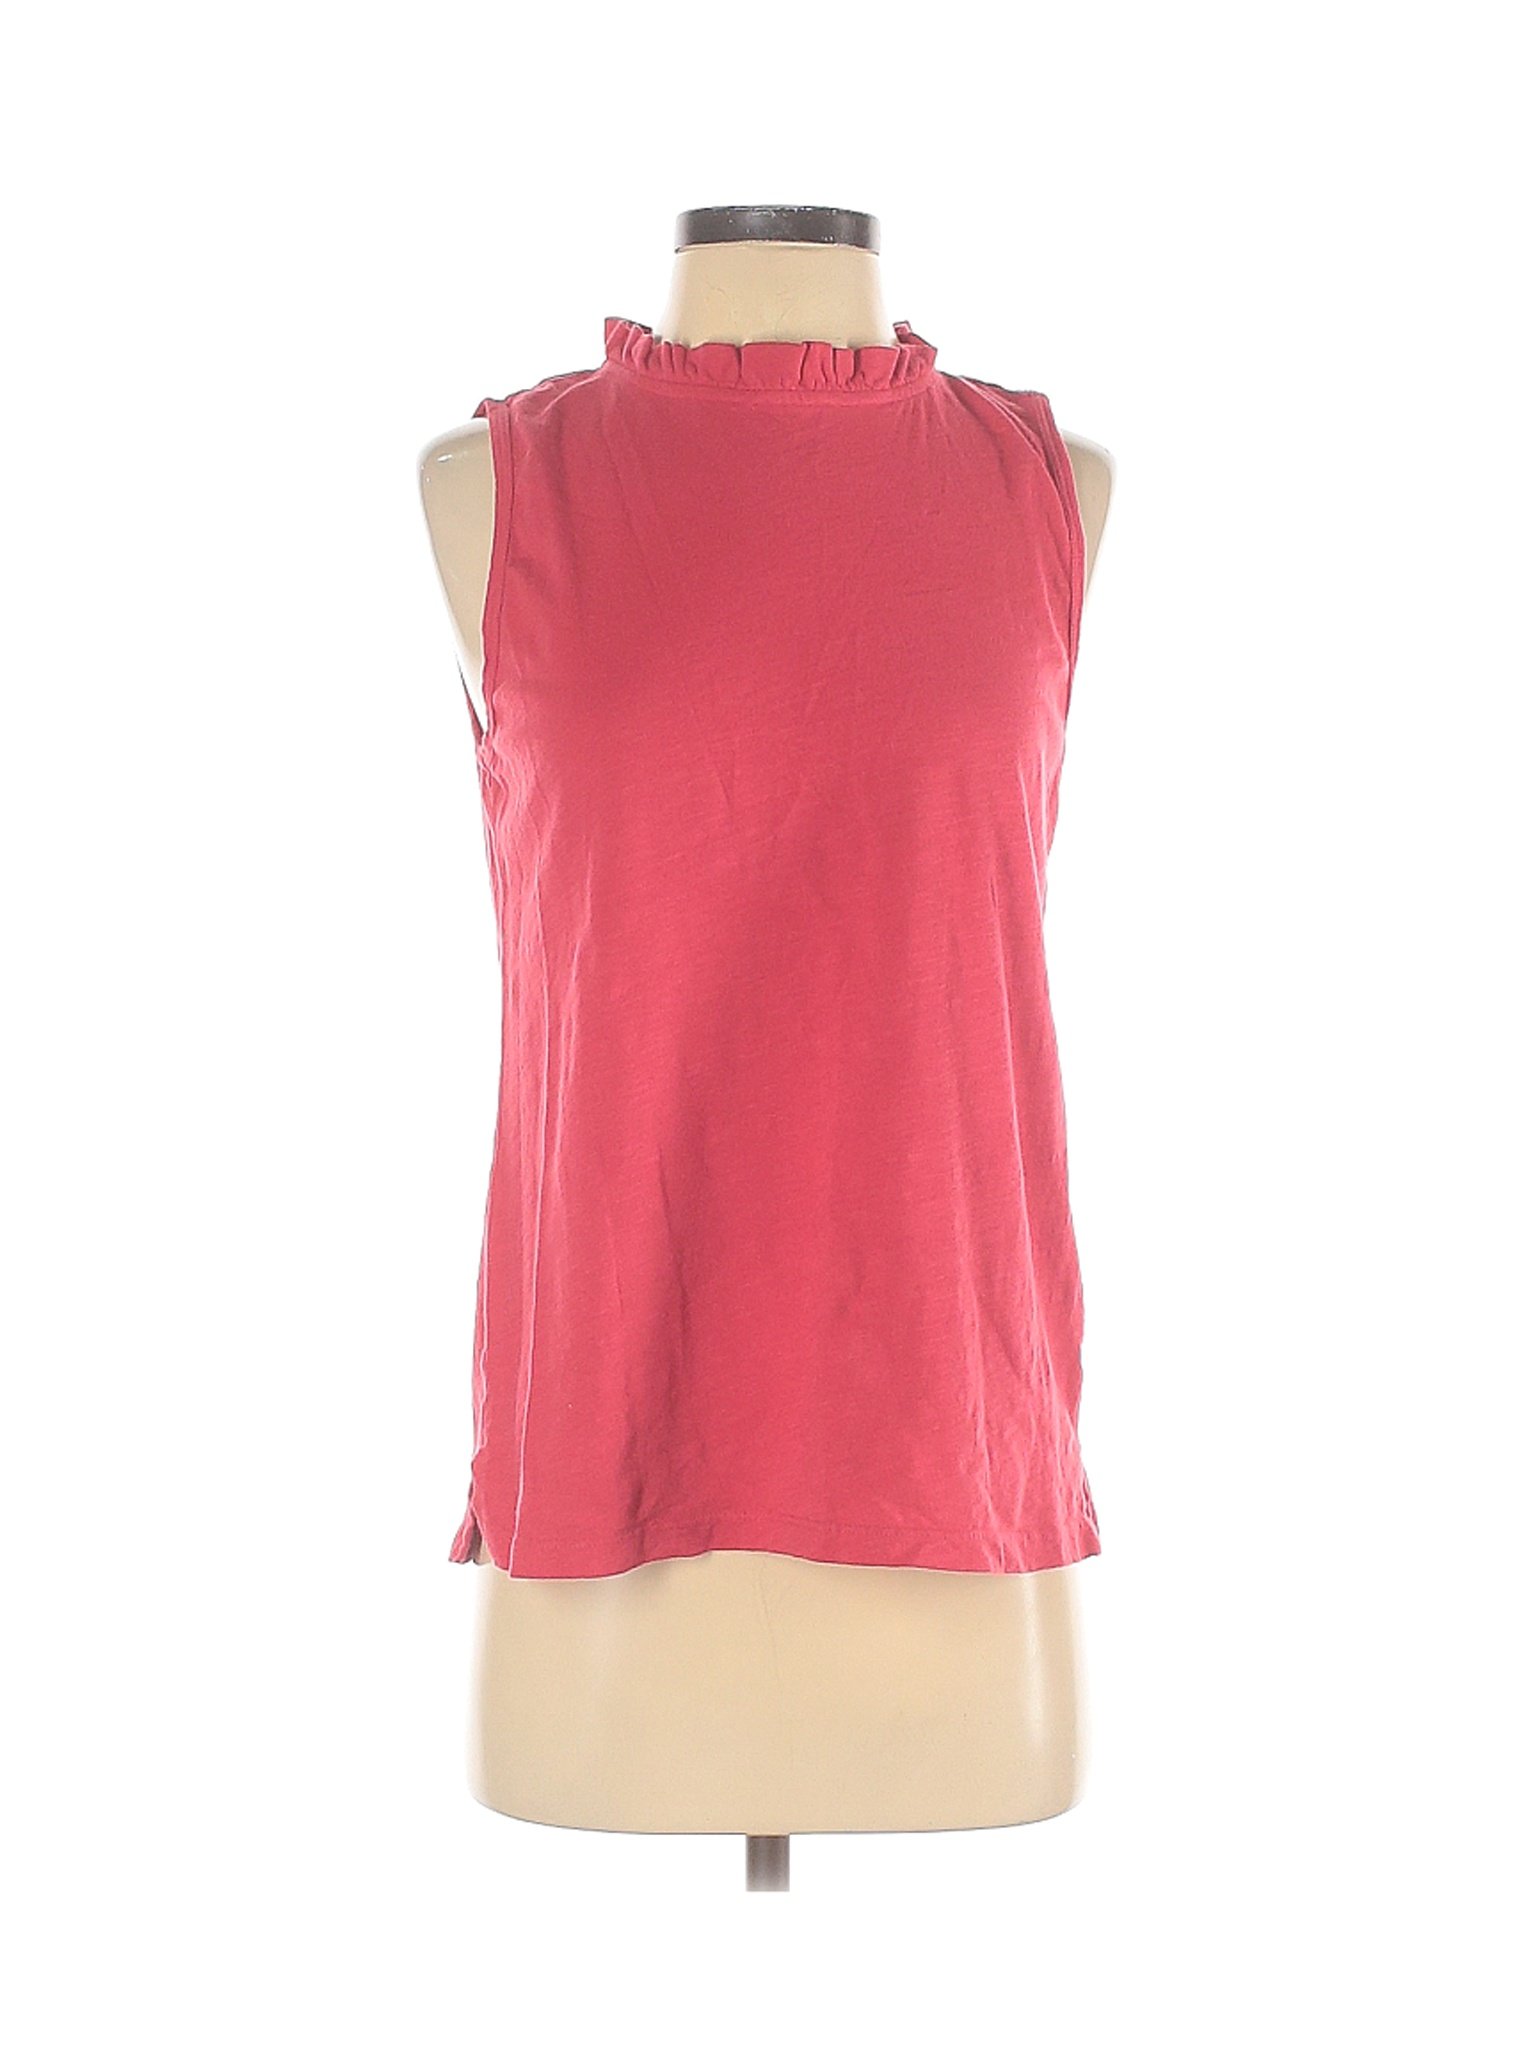 T.la Women Red Sleeveless Top S | eBay